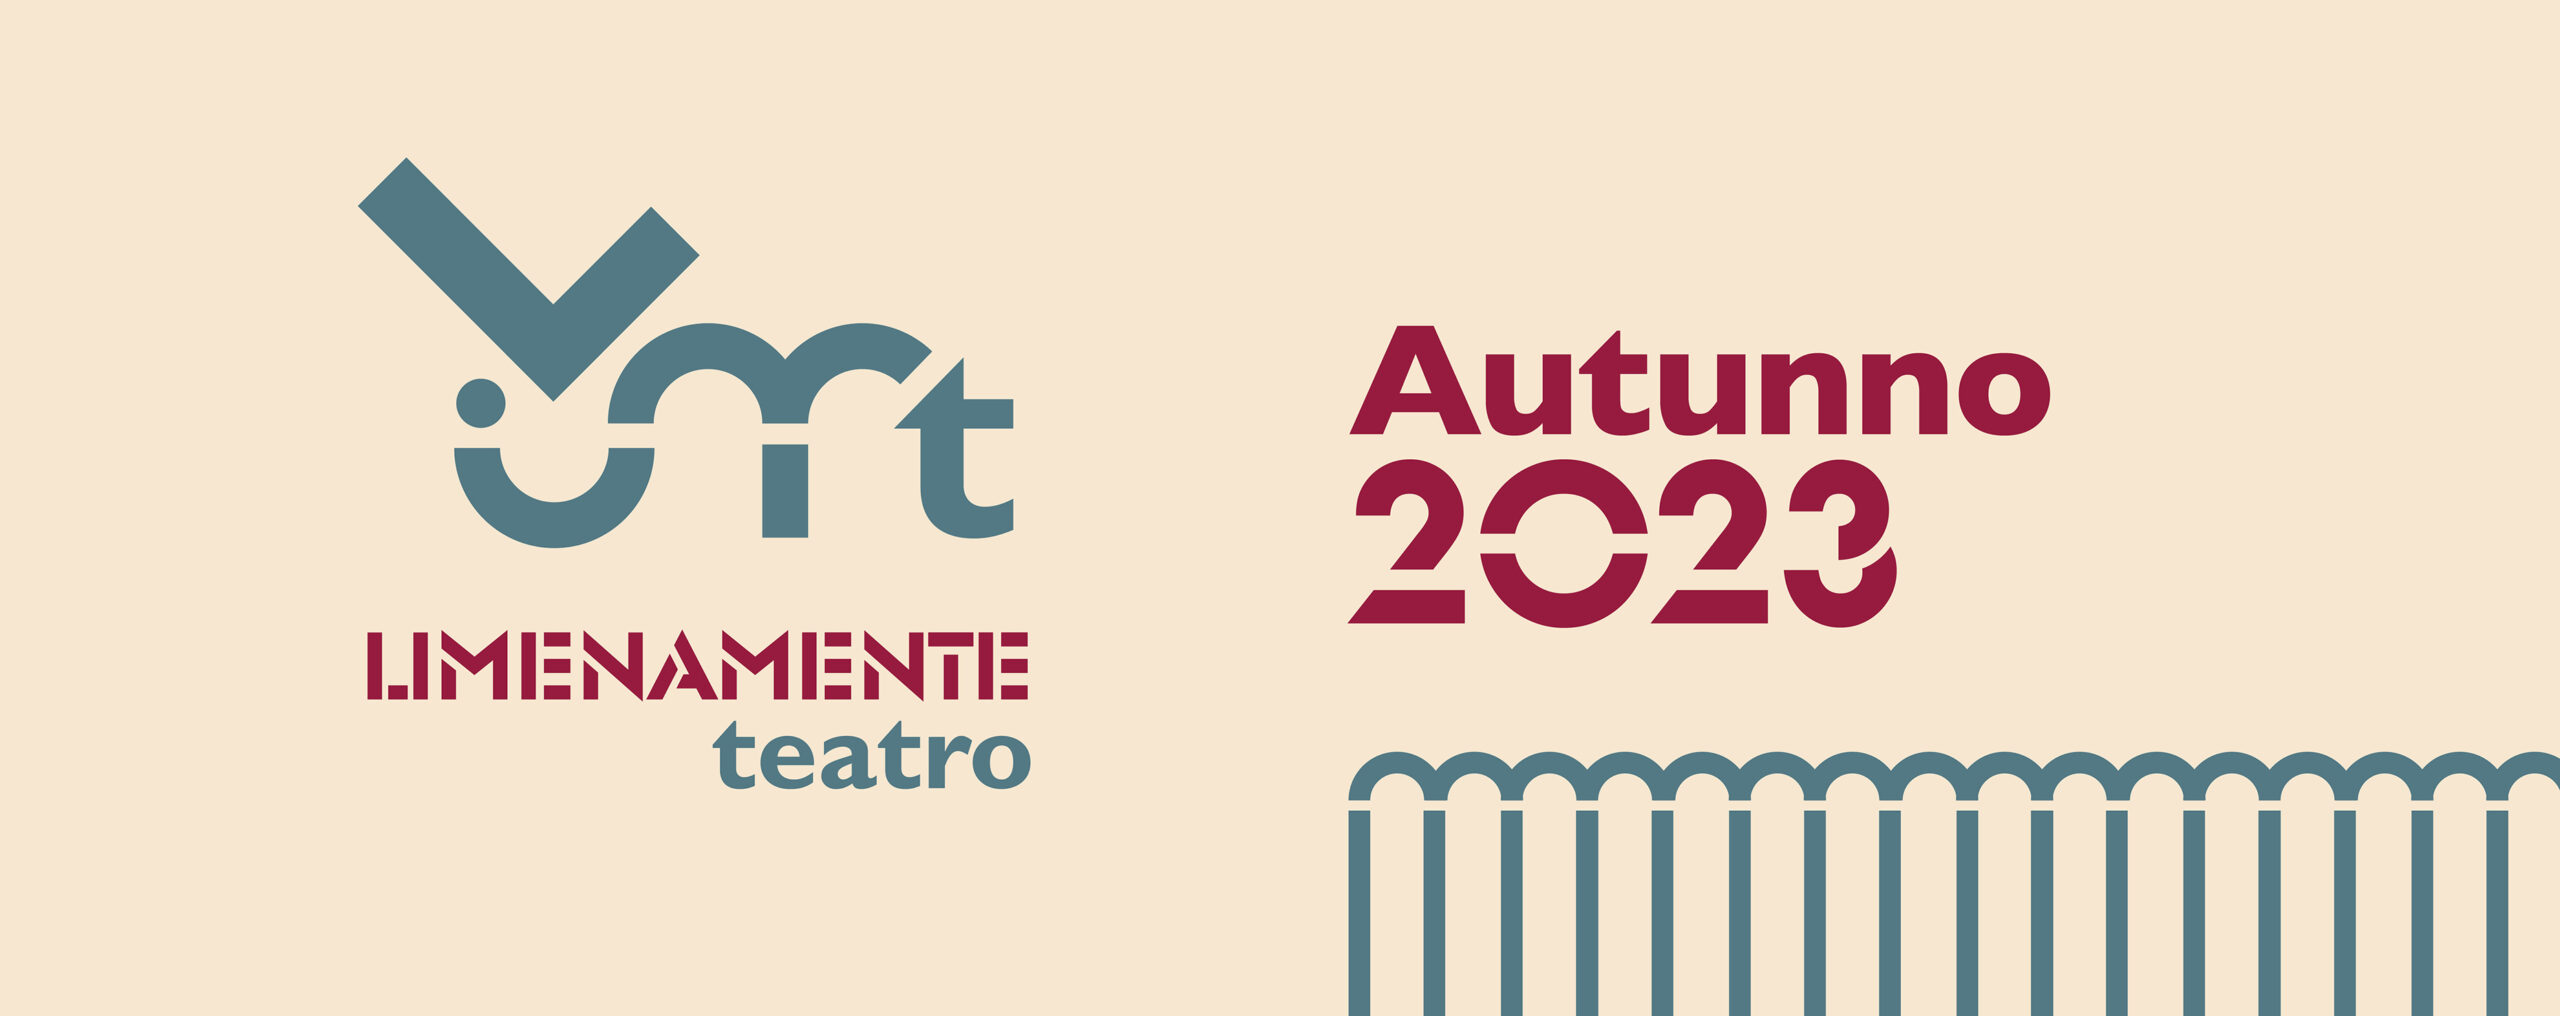 Limenamente Teatro Autunno 2023